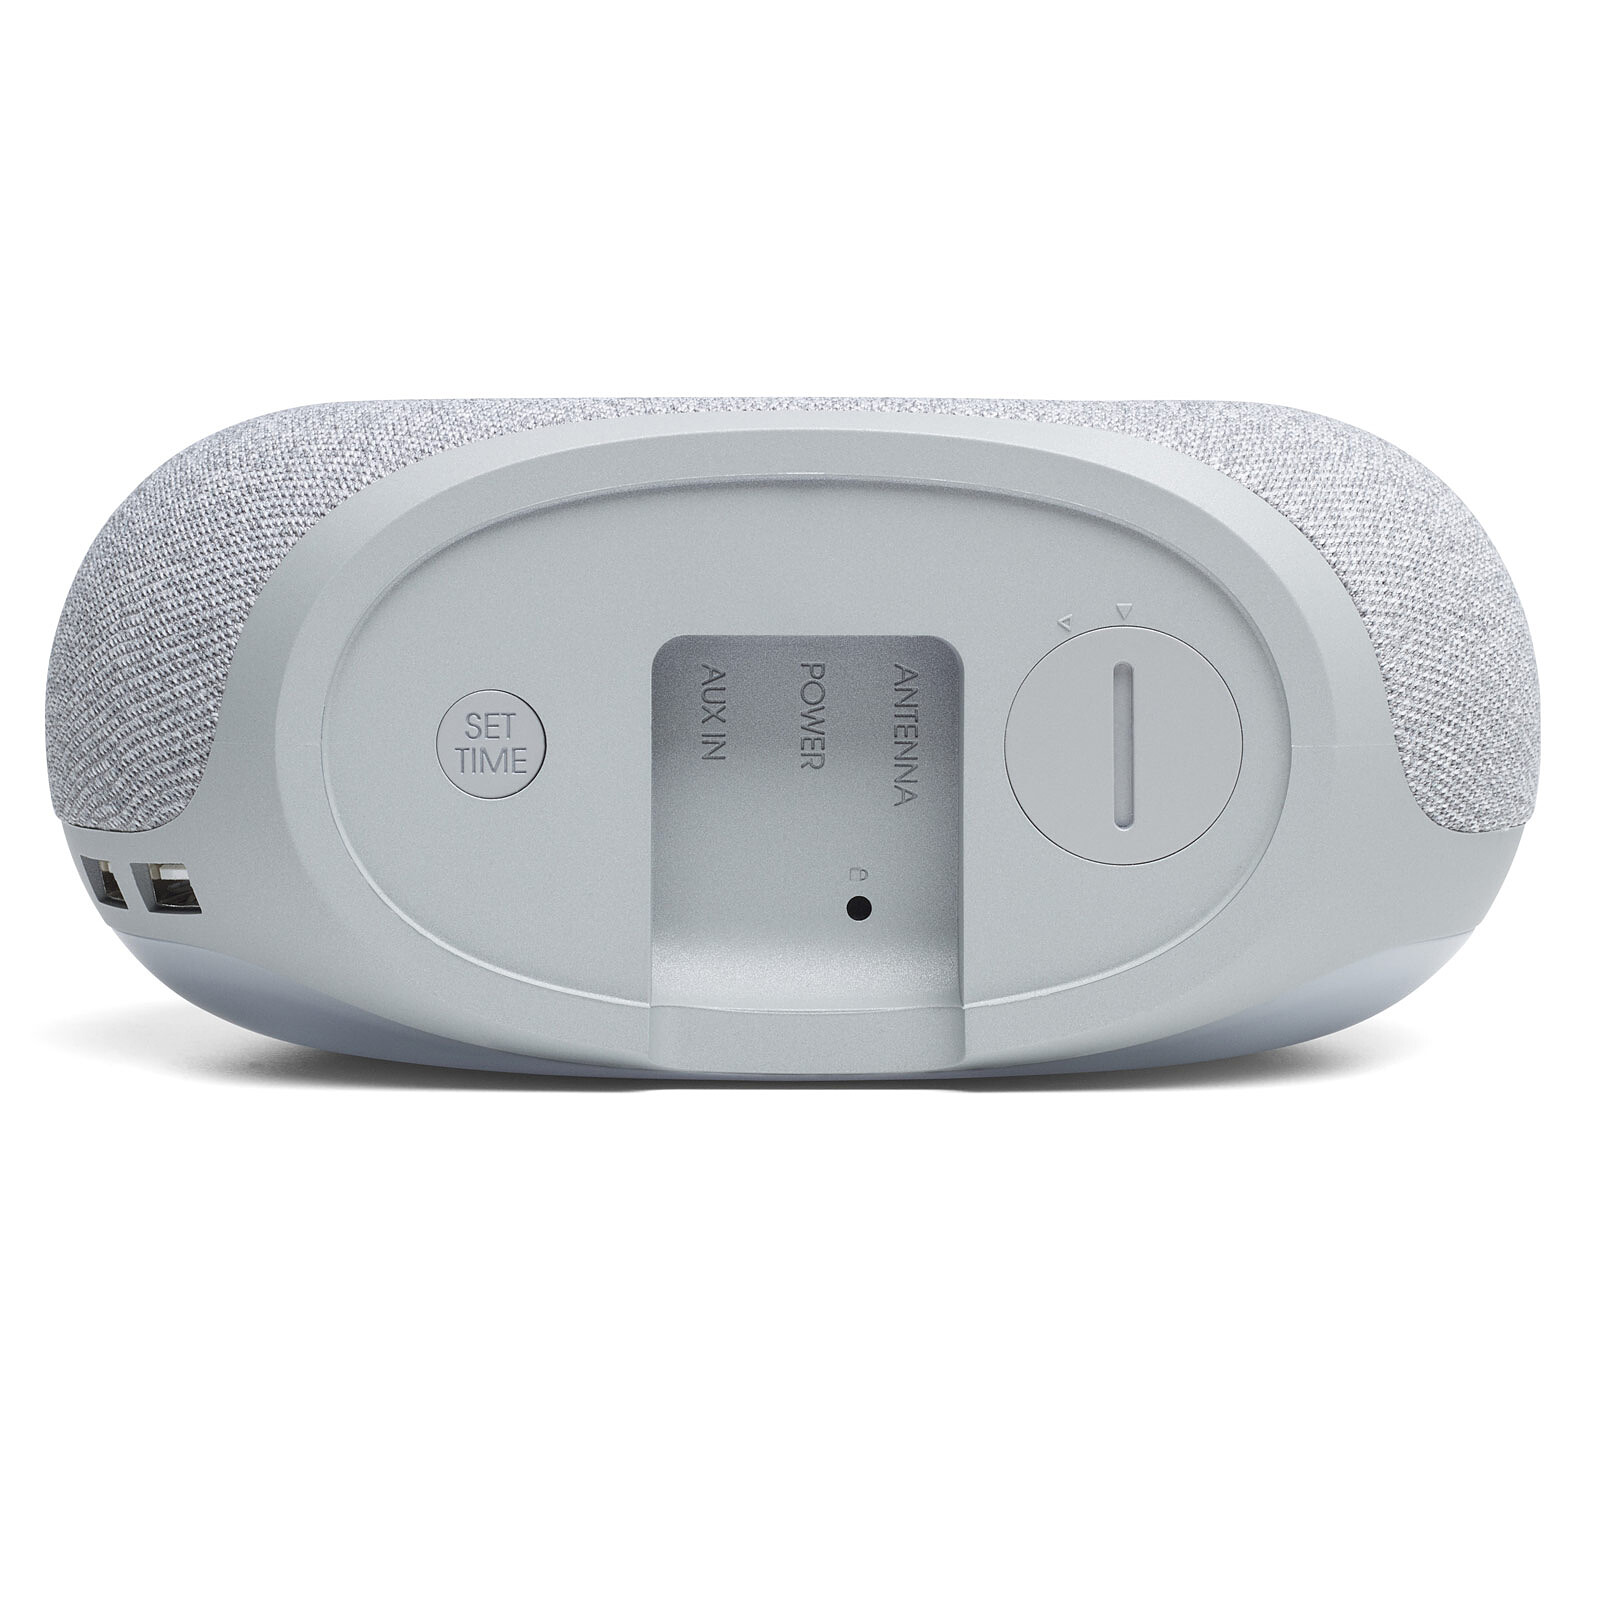 Radio-réveil numérique Bluetooth avec 2 ports USB et lumière